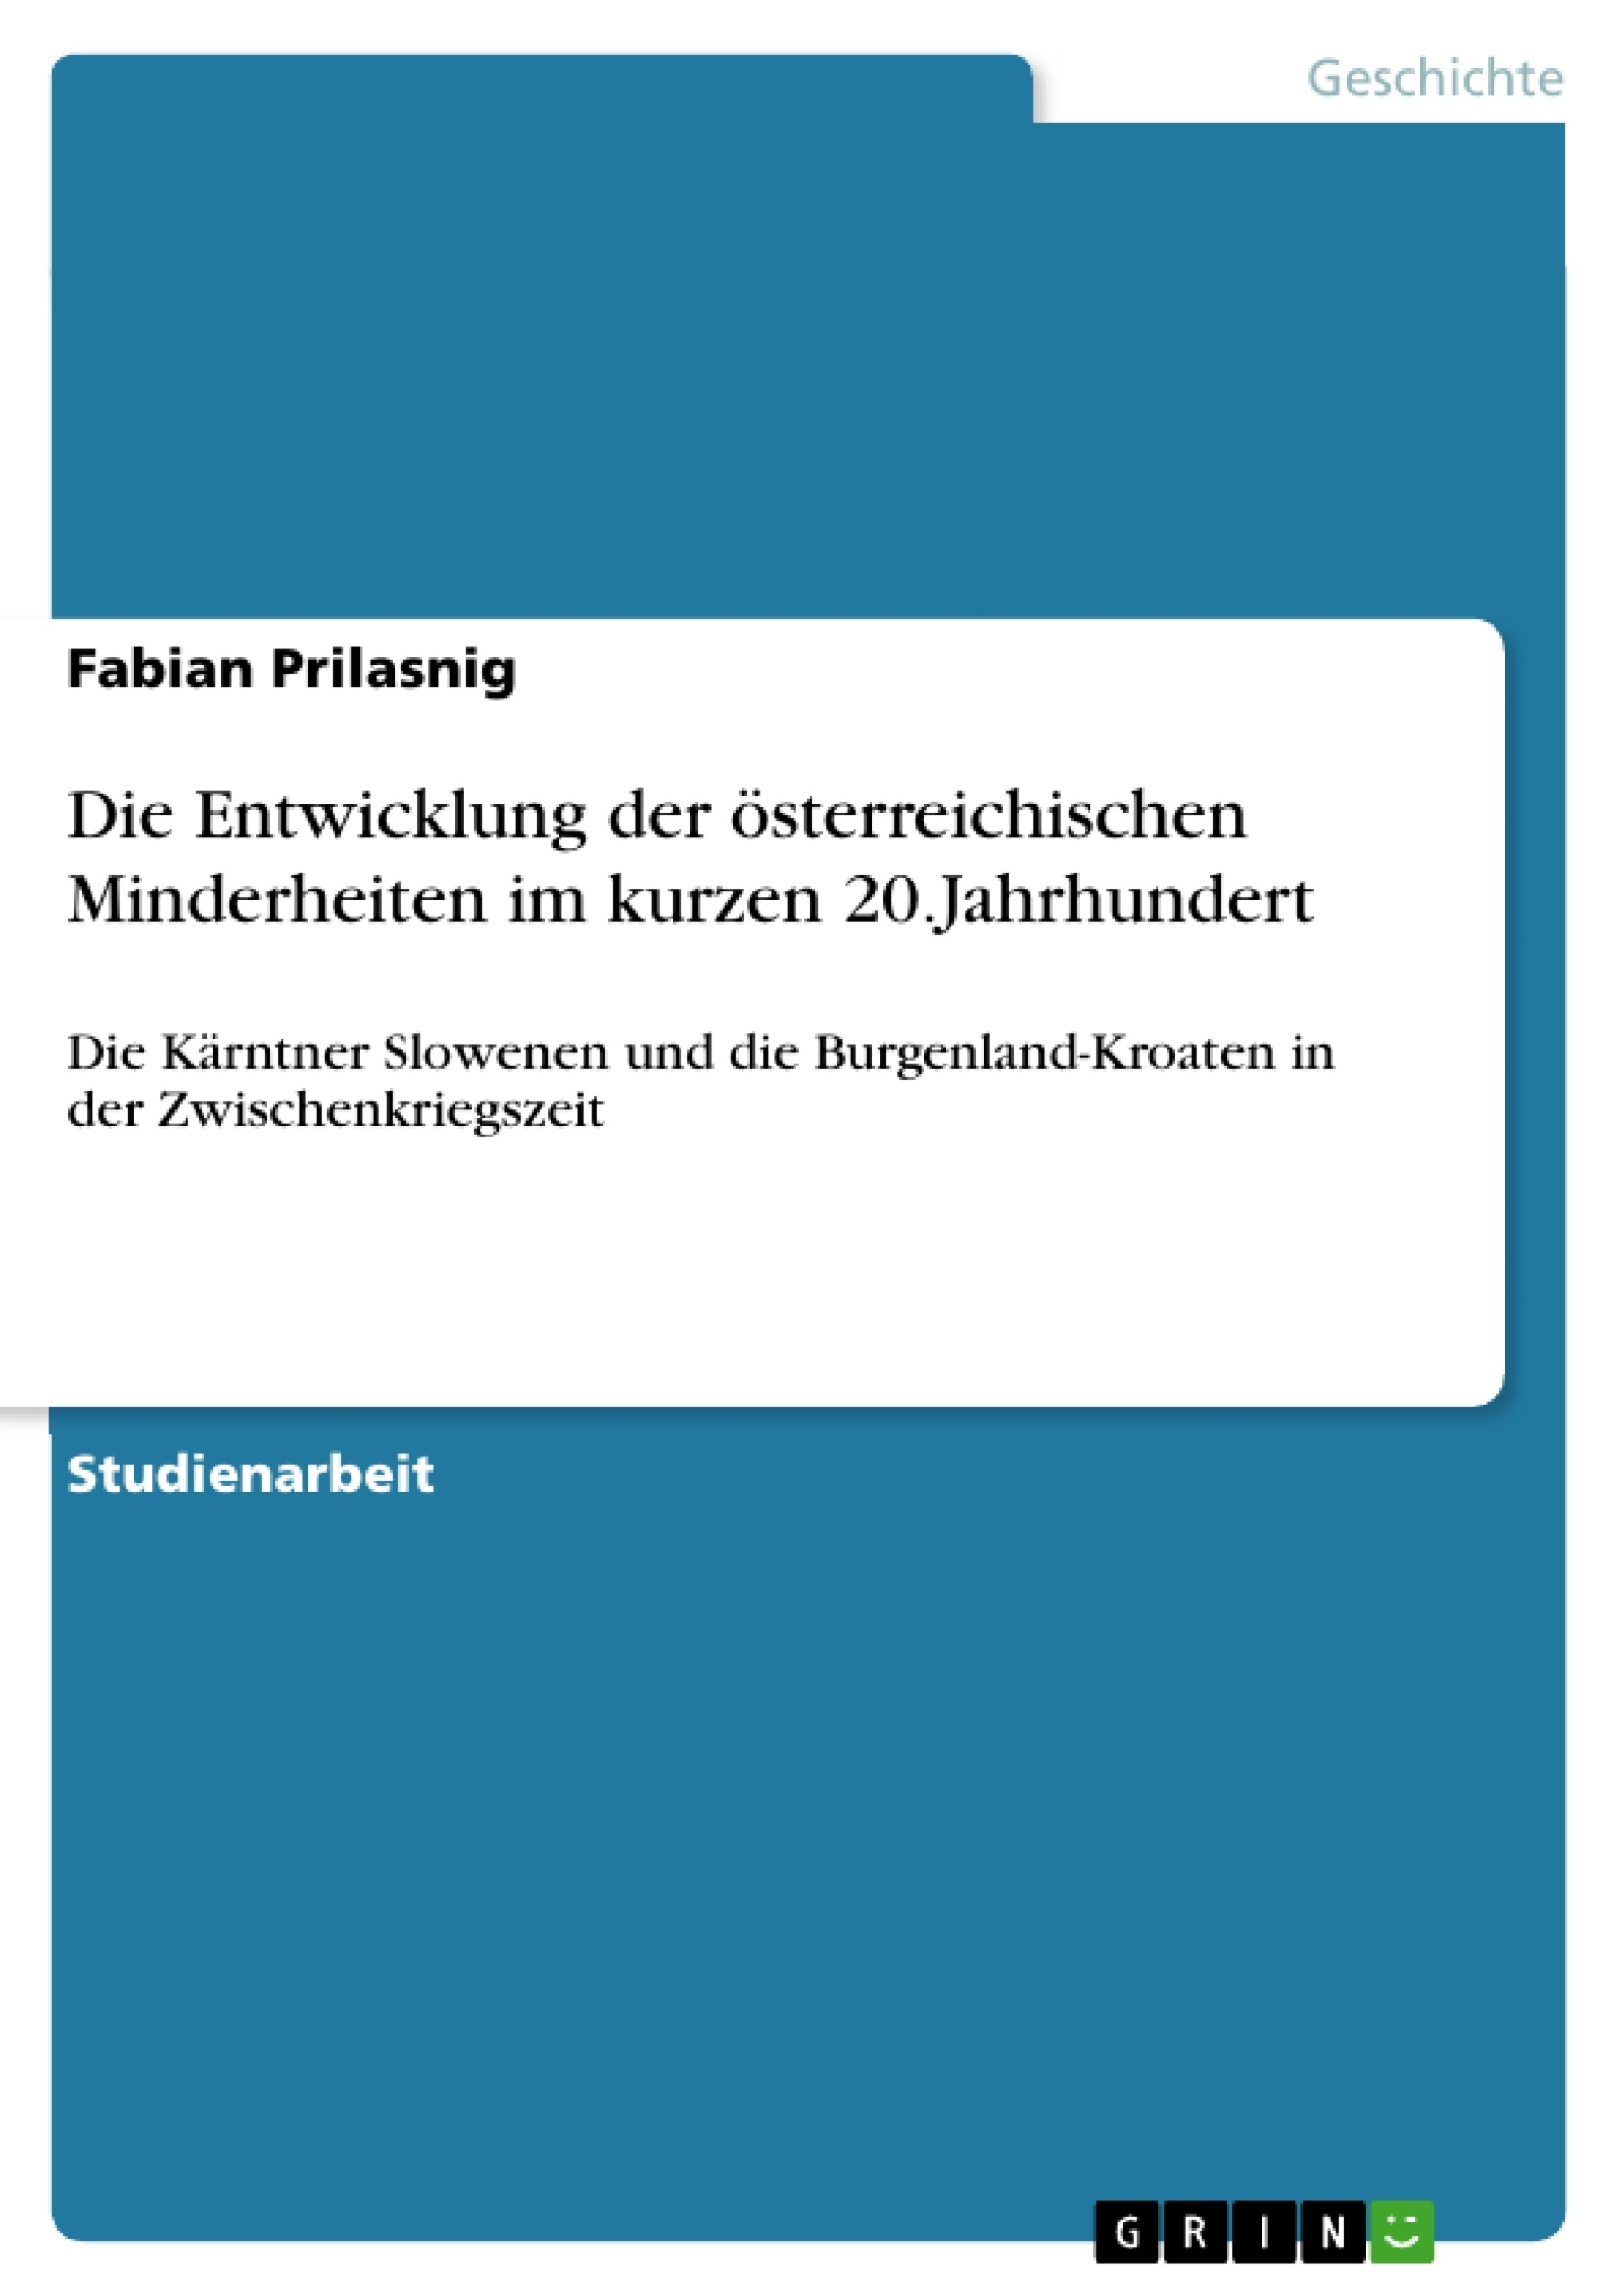 Title: Die Entwicklung der österreichischen Minderheiten im kurzen 20.Jahrhundert